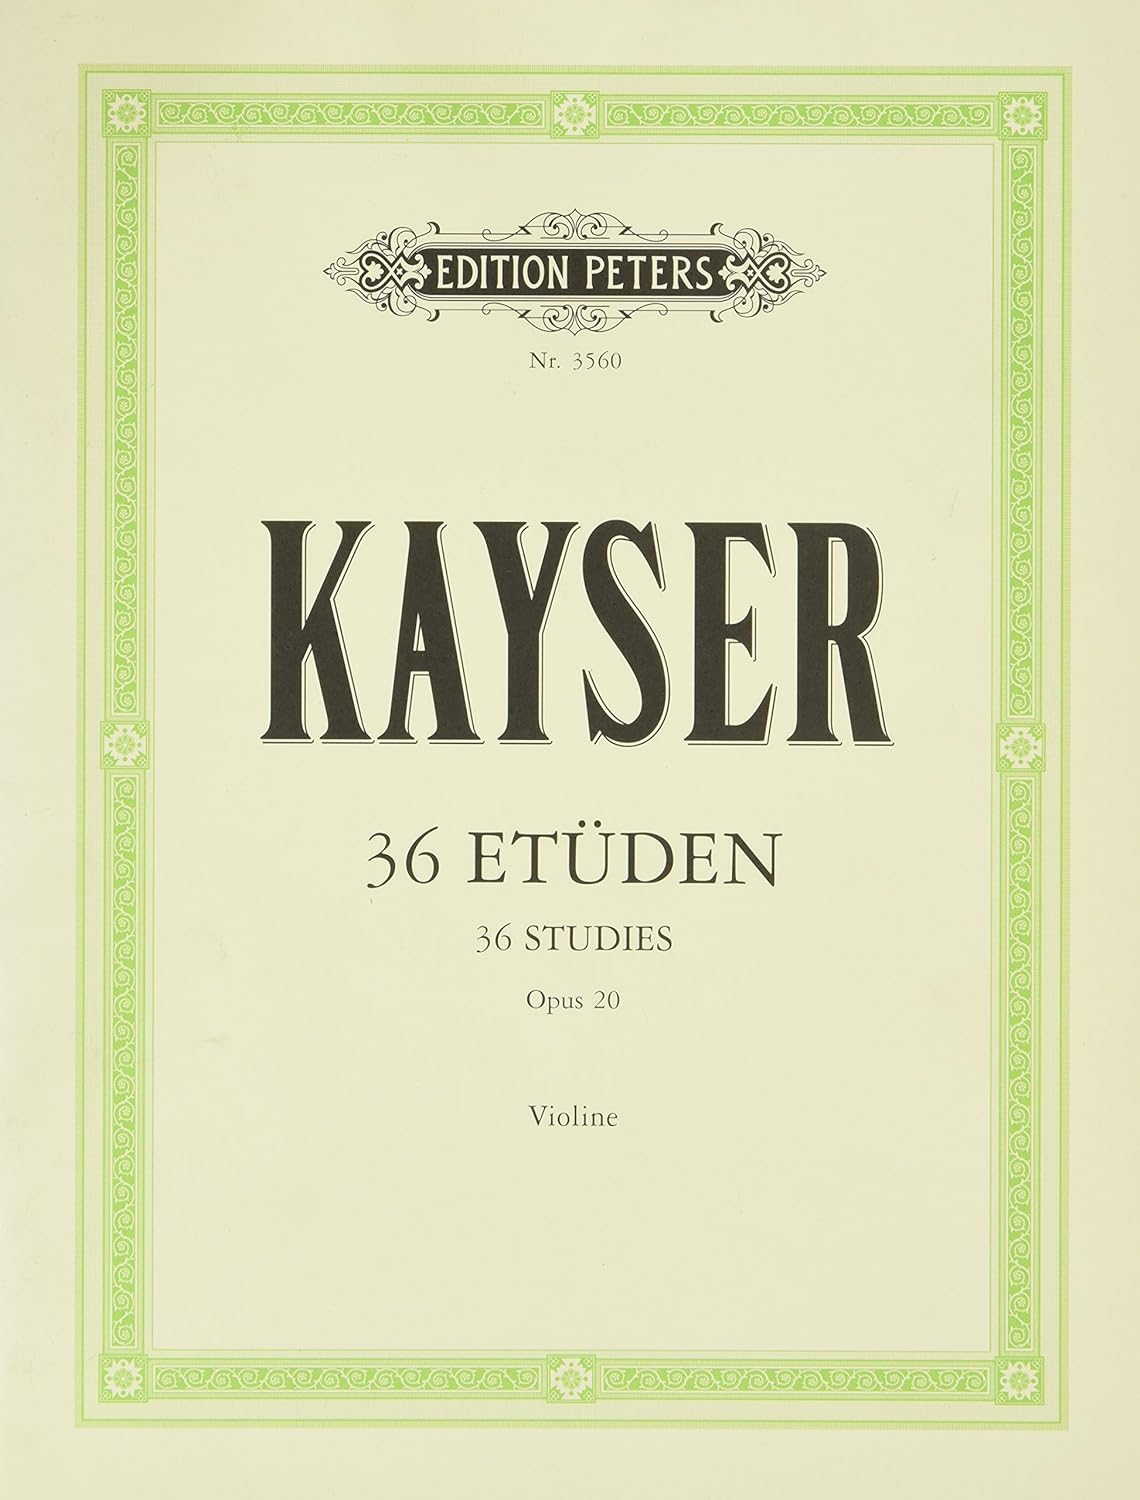 Kayser 36 Studies for Violin Op.20 (Peters) Piano Traders